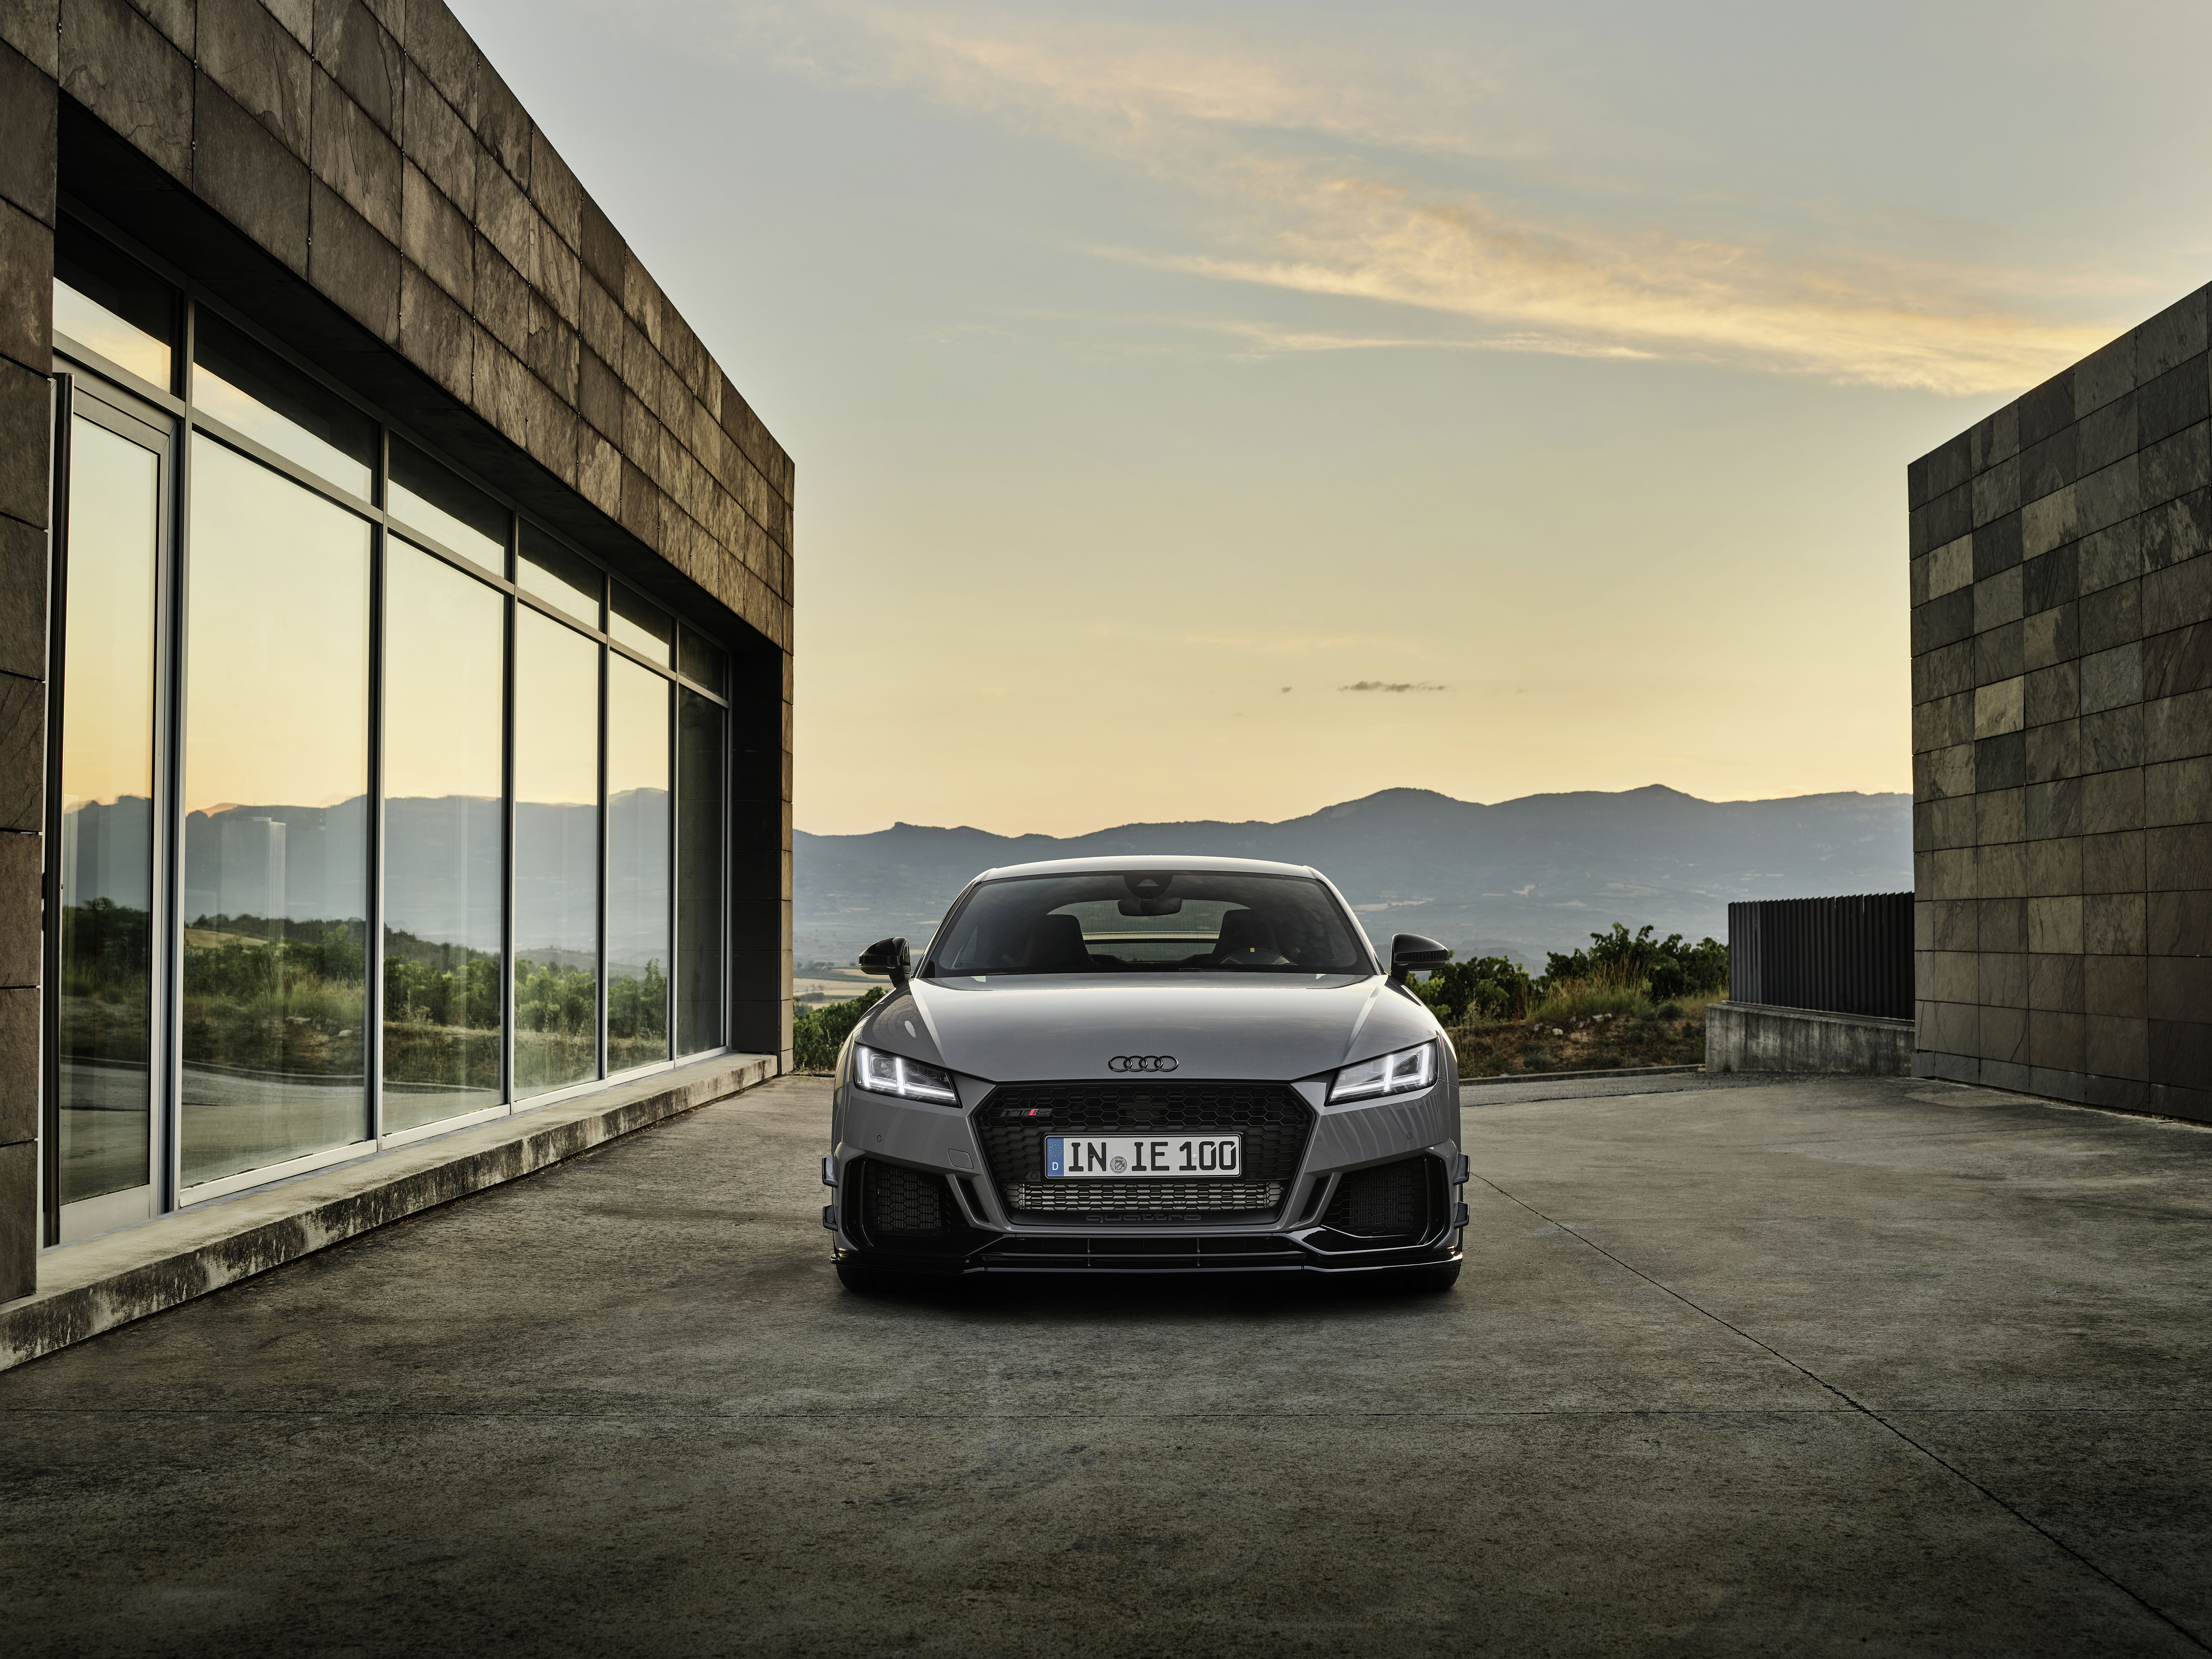 Audi TT RS Coupé Iconic Edition | limitovaná edice legendárního tétéčka | poslední model na rozlouženou | sportovní coupé fantastickým motorem 2,5 TFSI | výkon 400 koní | limitovaná edice pouze 100 aut | nákup online | AUTOiBUY.com